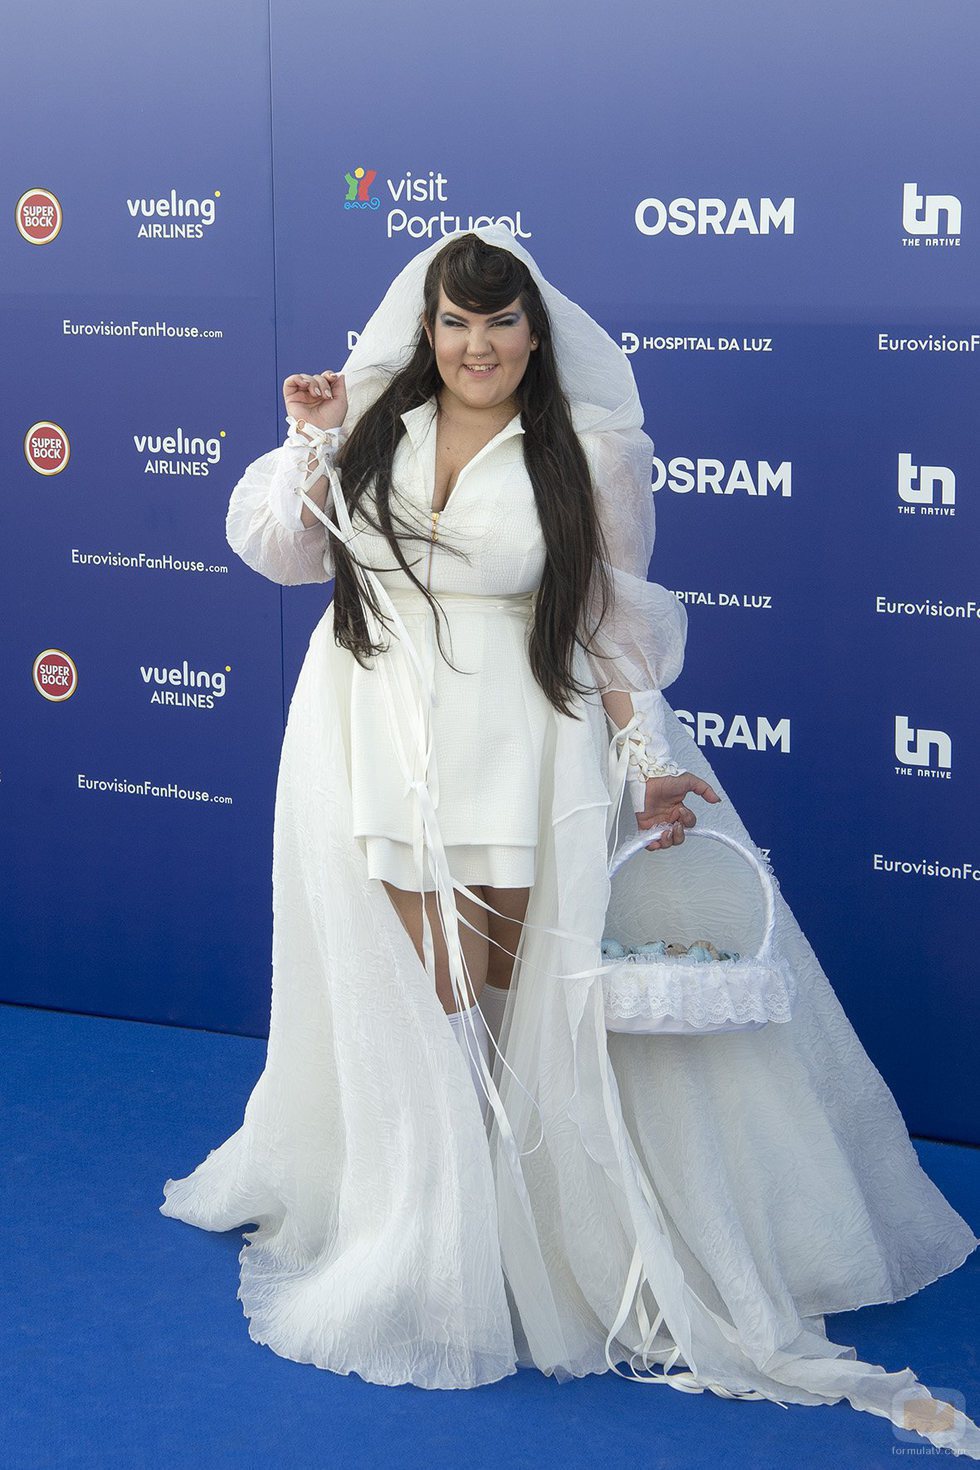 Netta, representante de Israel en Eurovisión 2018, a su paso por la 'Blue Carpet'